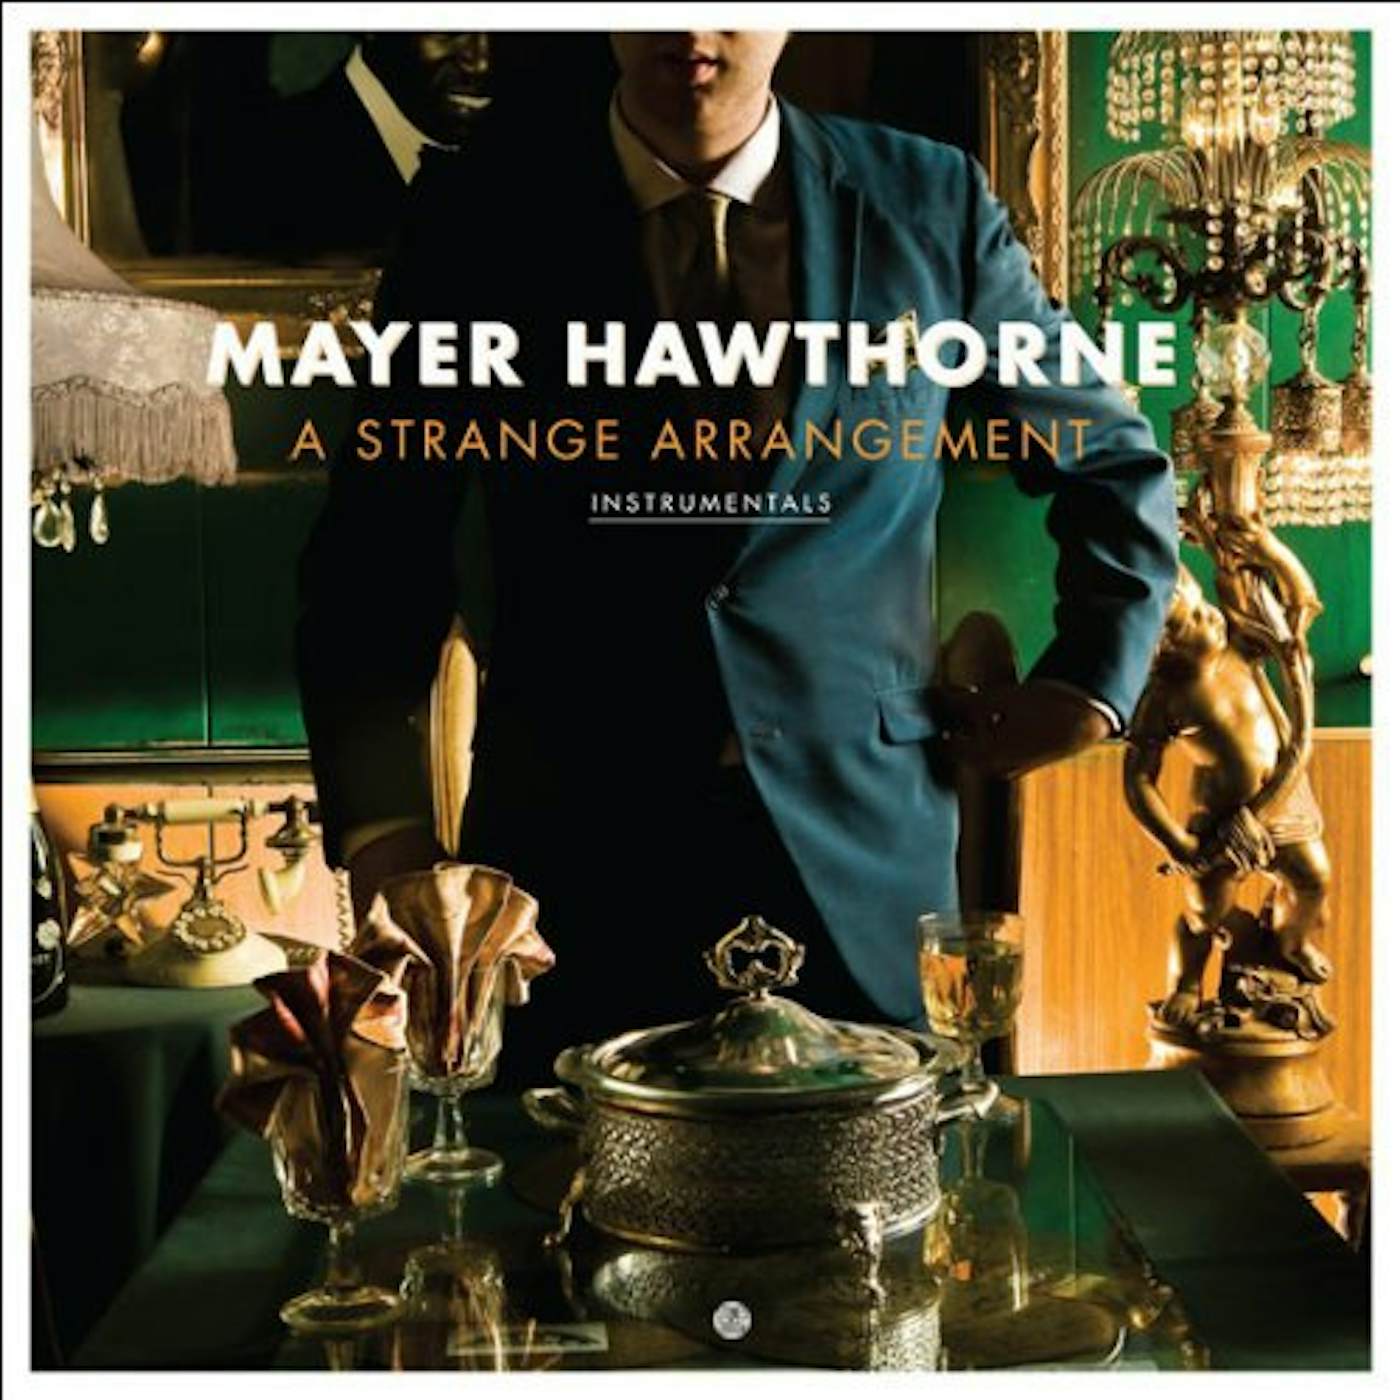 Mayer Hawthorne STRANGE ARRANGEMENT INSTRUMENTALS Vinyl Record